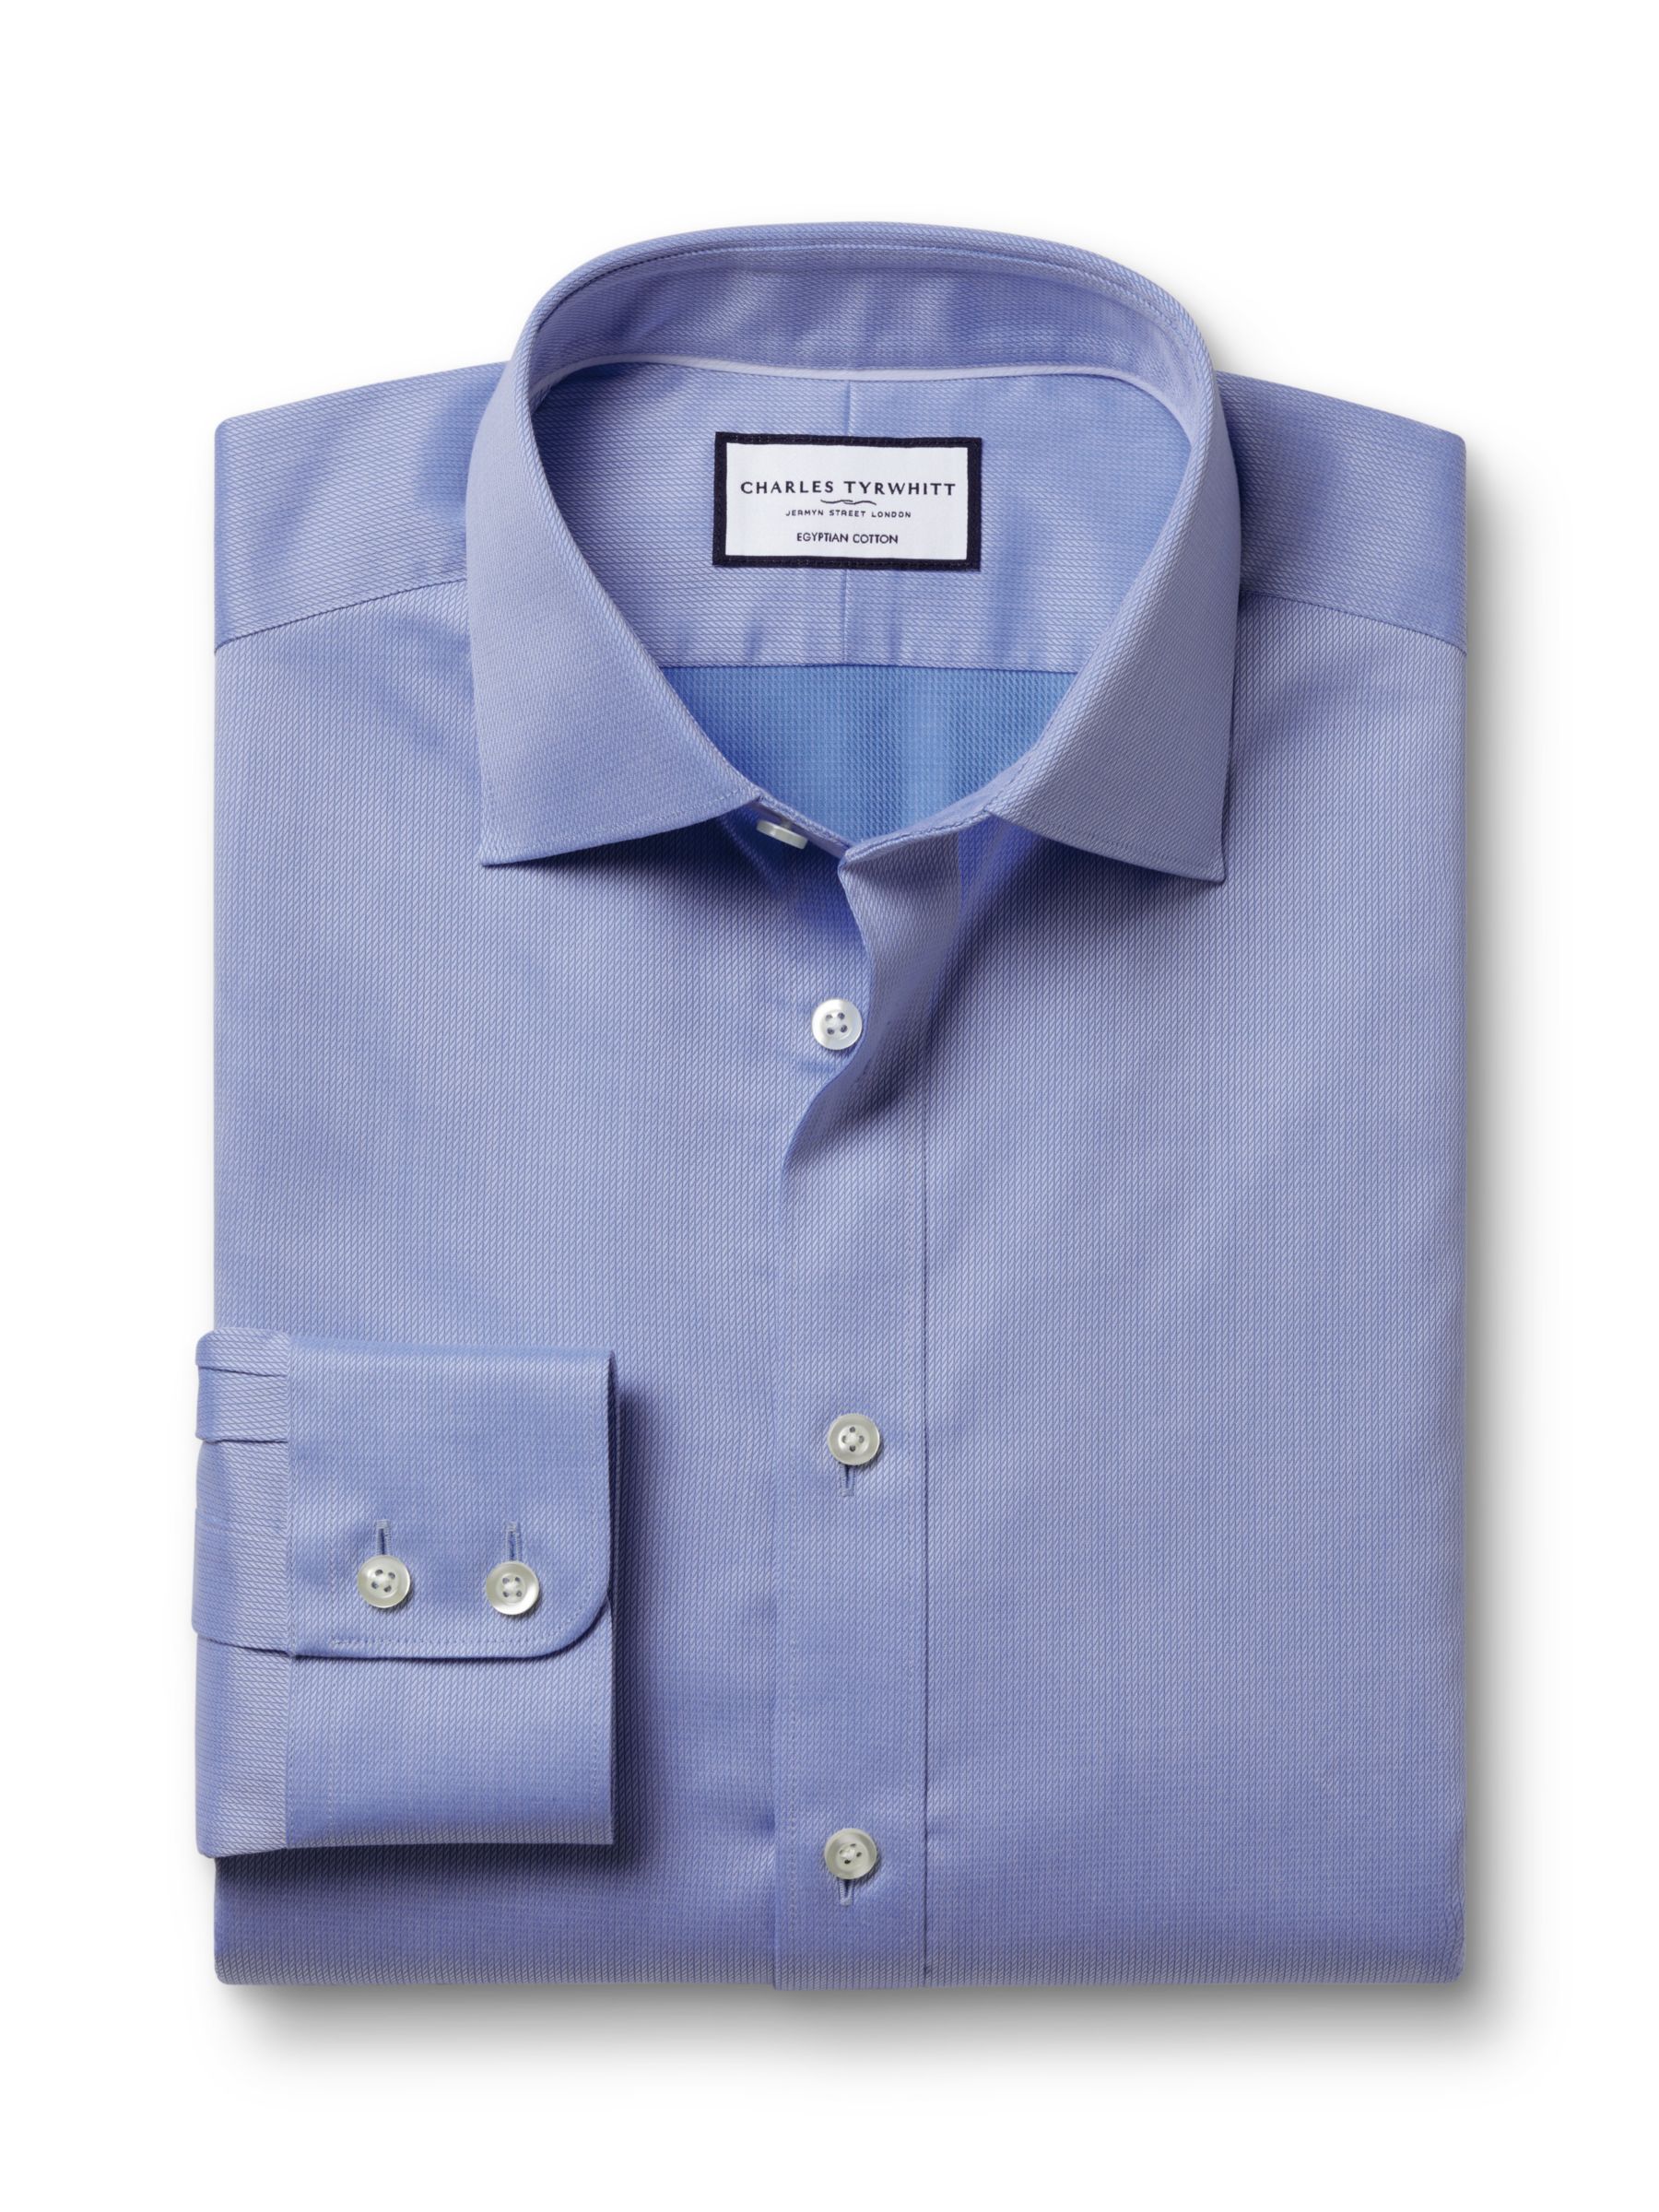 Charles Tyrwhitt Egyptian Cotton Windsor Dobby Weave Shirt, Cornflower Blue, 14.5